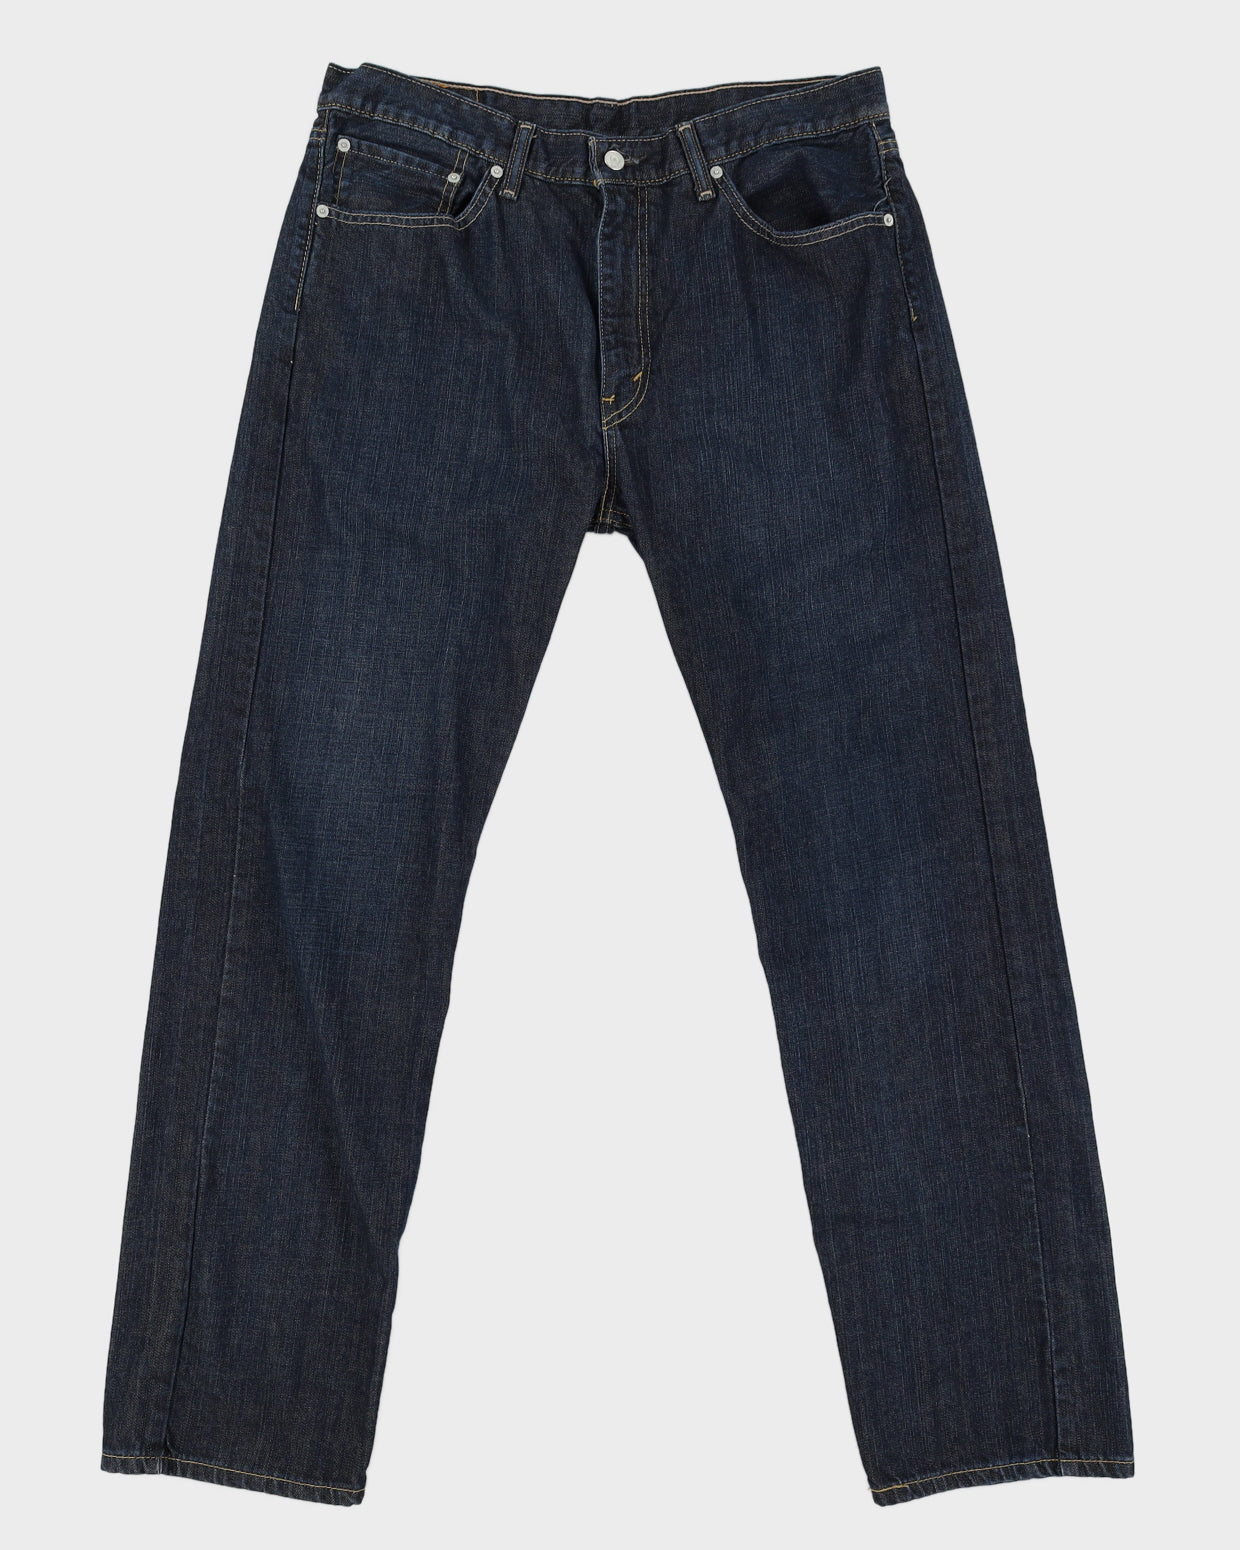 Levi's Dark Wash 505 Jeans - W36 - L31